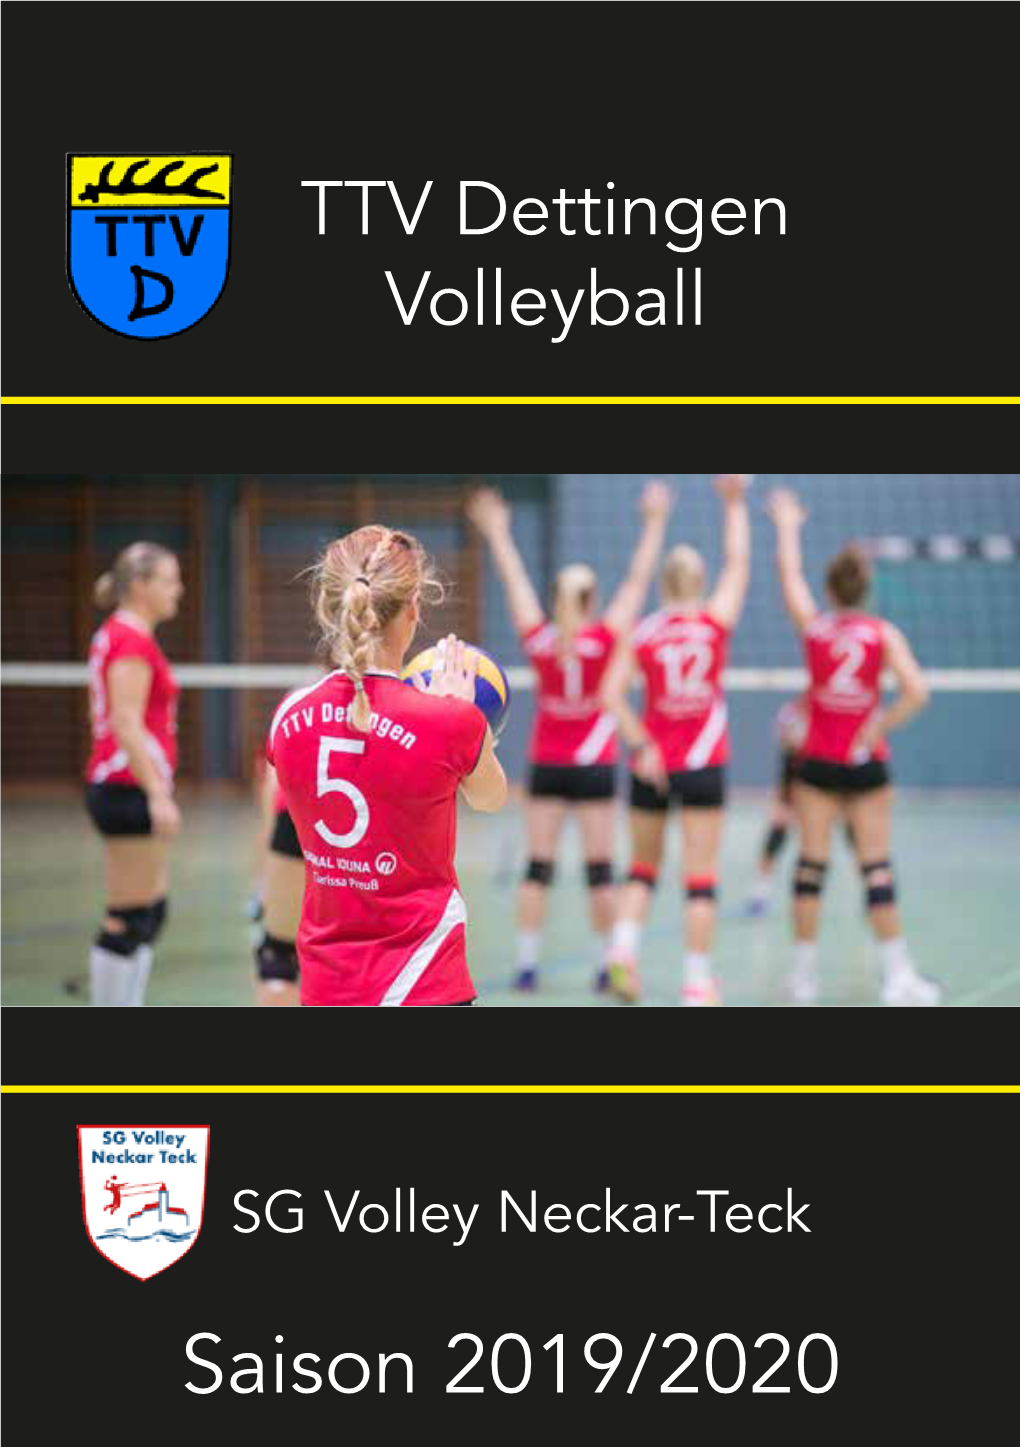 SG Volley Neckar-Teck